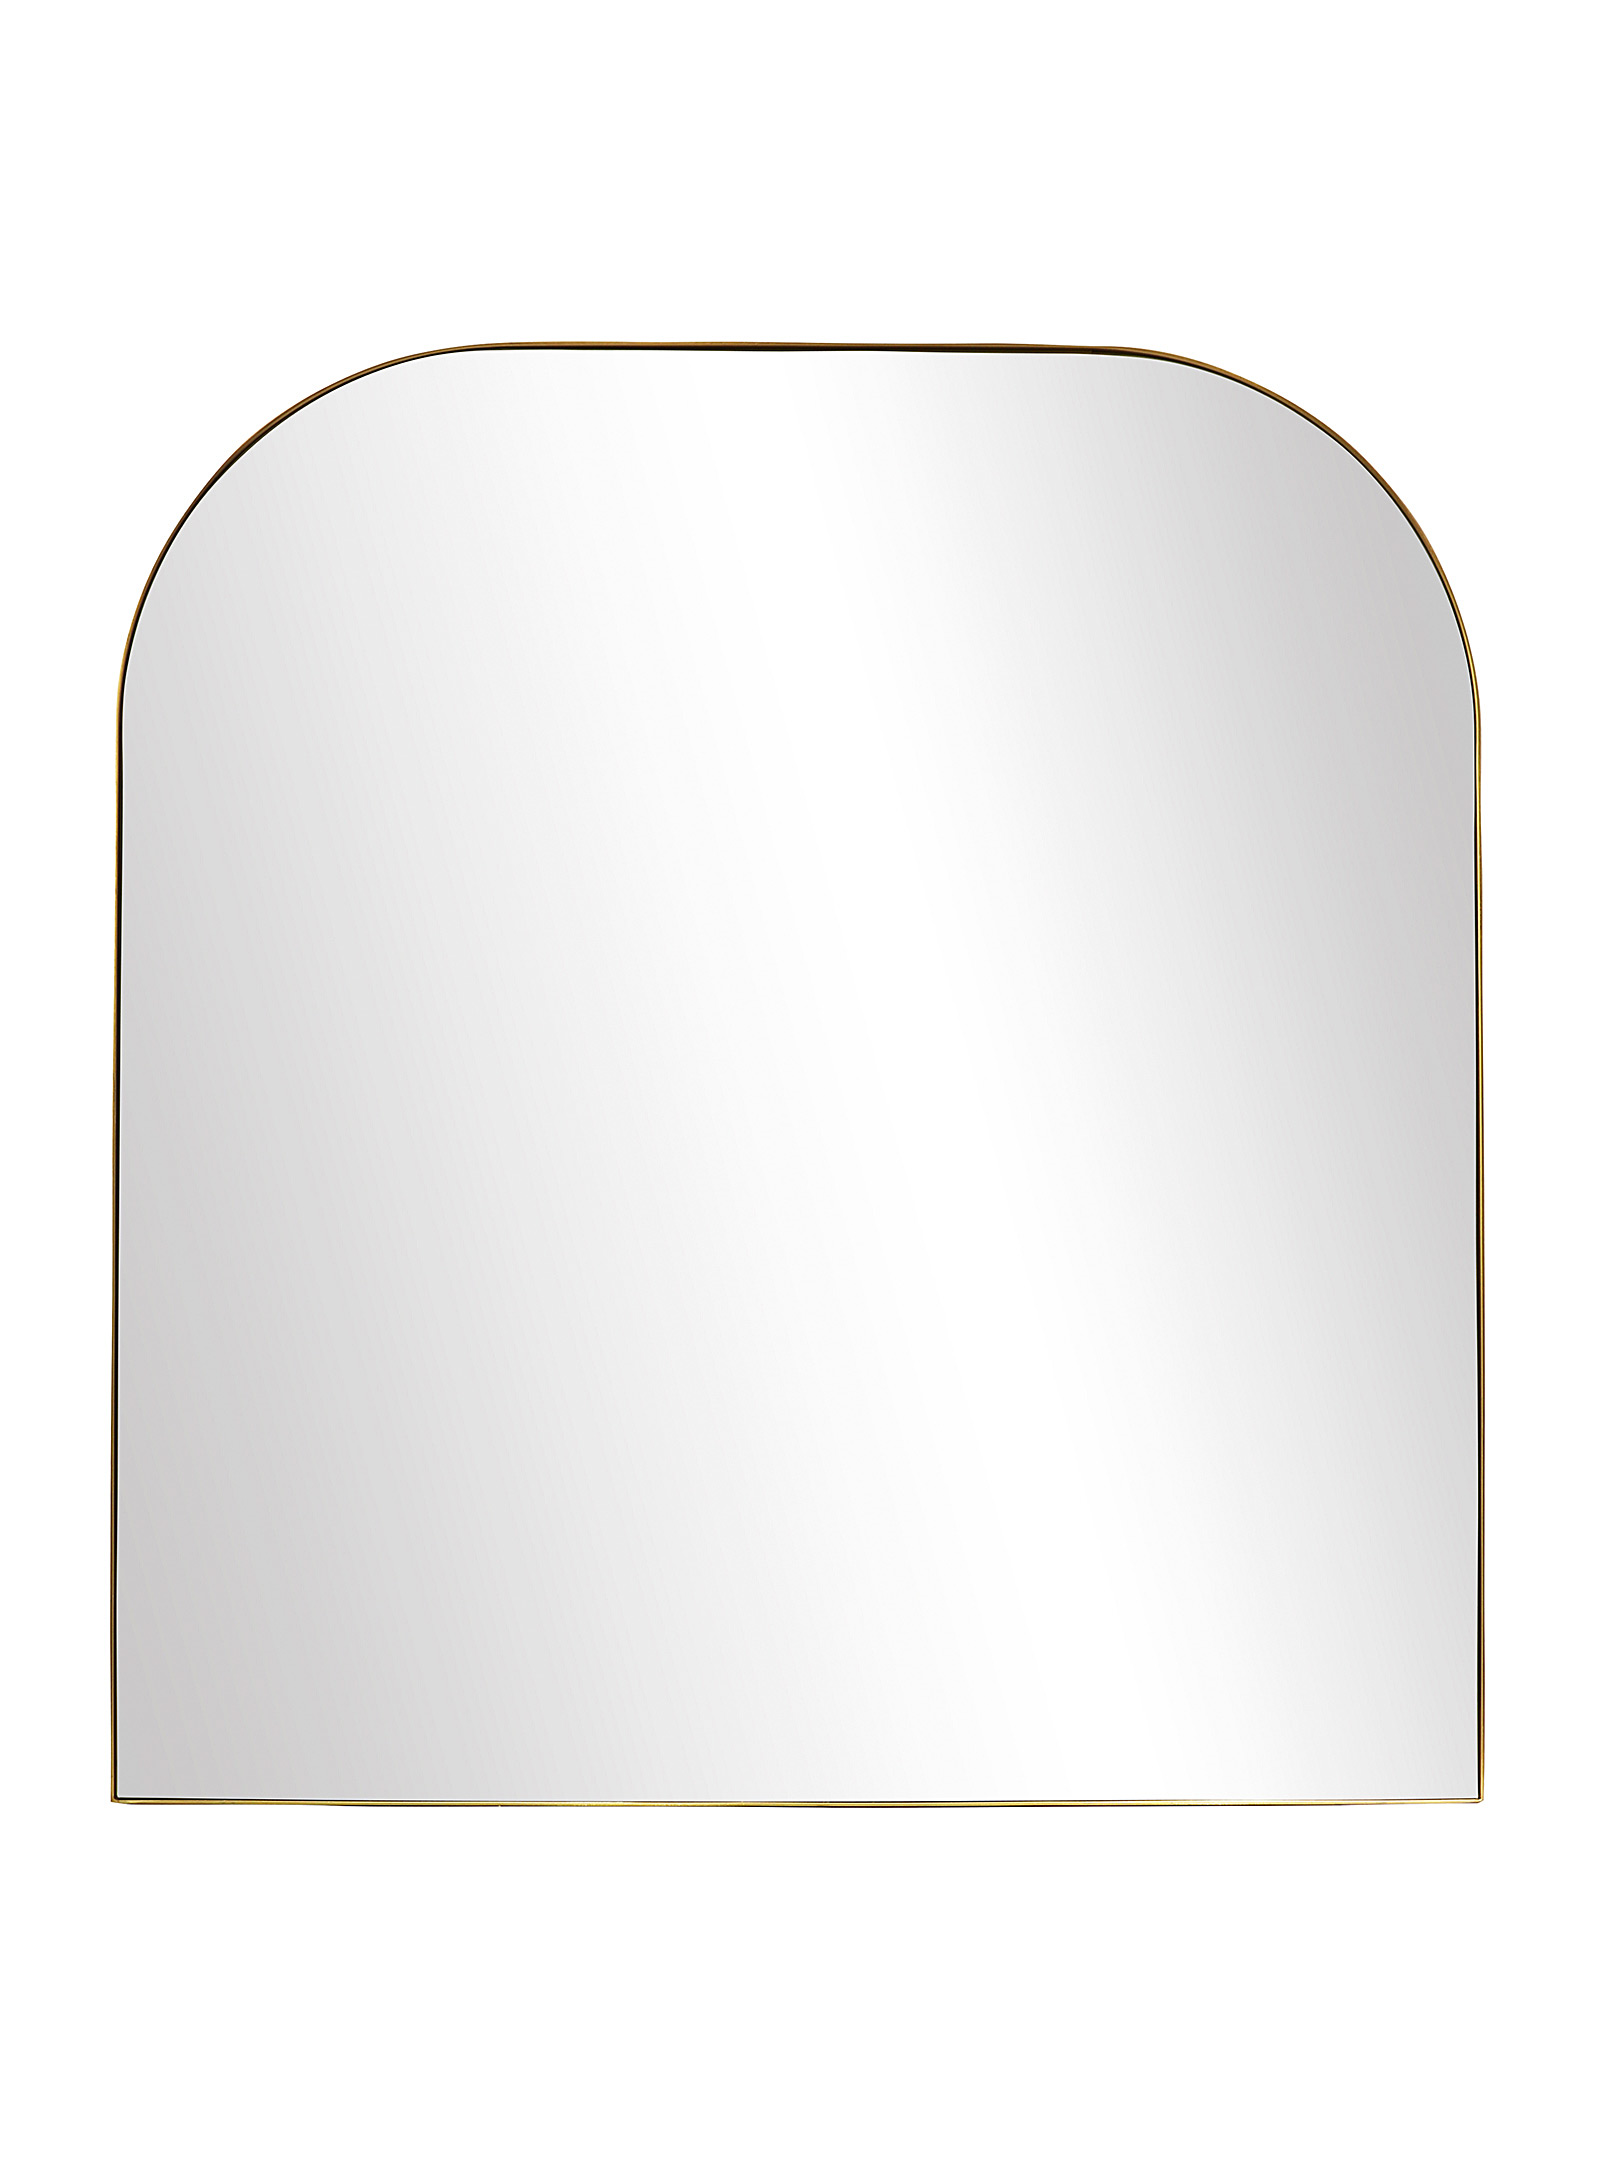 Simons Maison - Square golden arch mirror